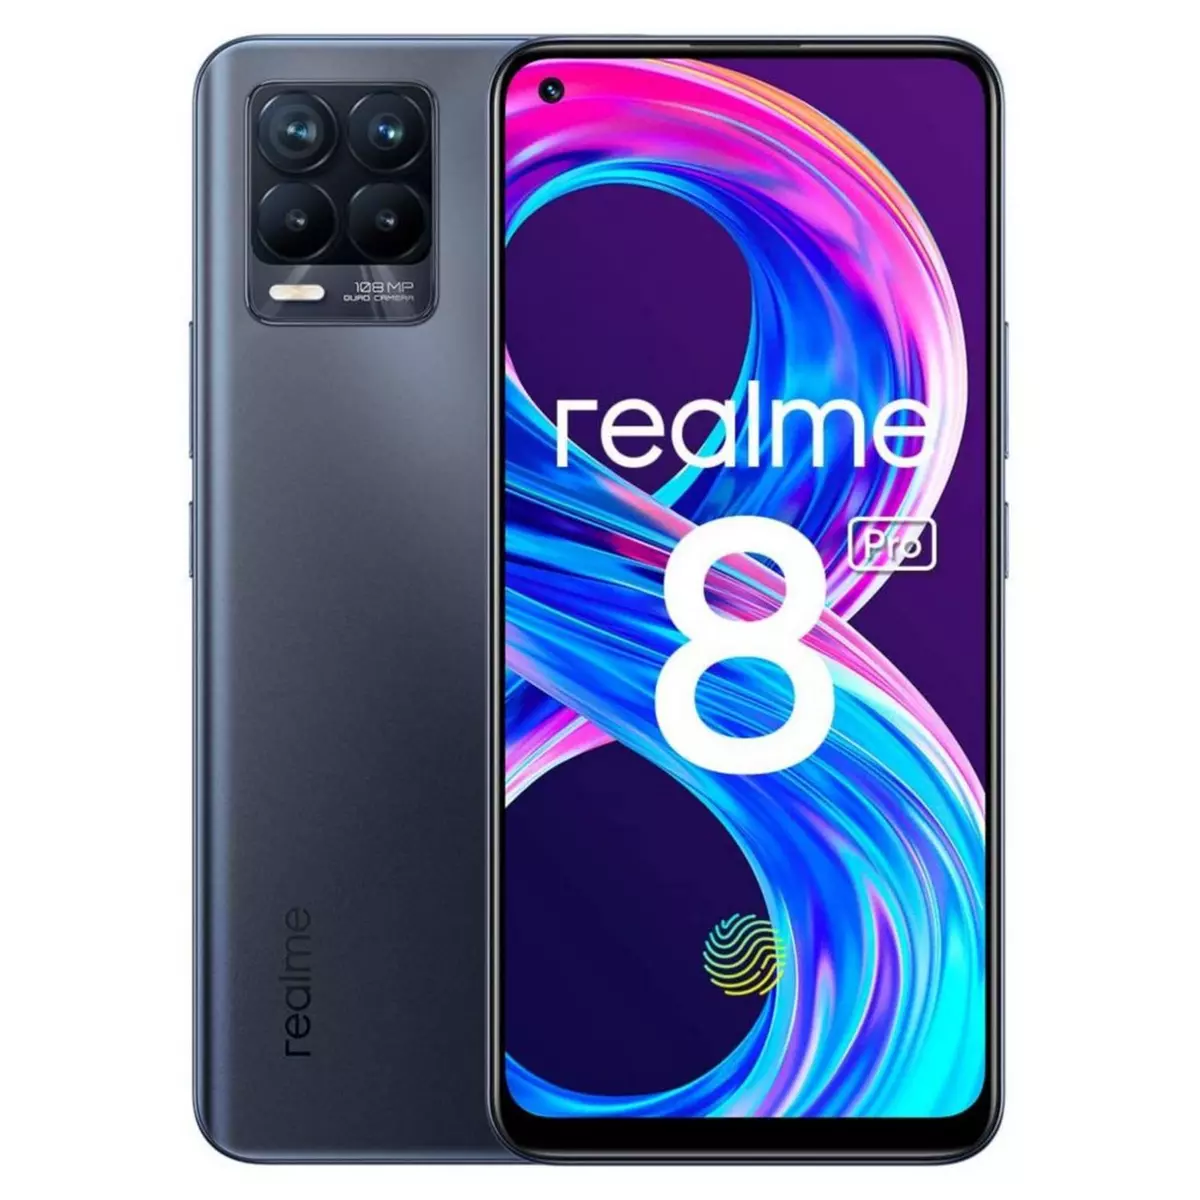 REALME Smartphone 8 Pro 128 Go  6.4 pouces  Noir  4G  Double Nano Sim